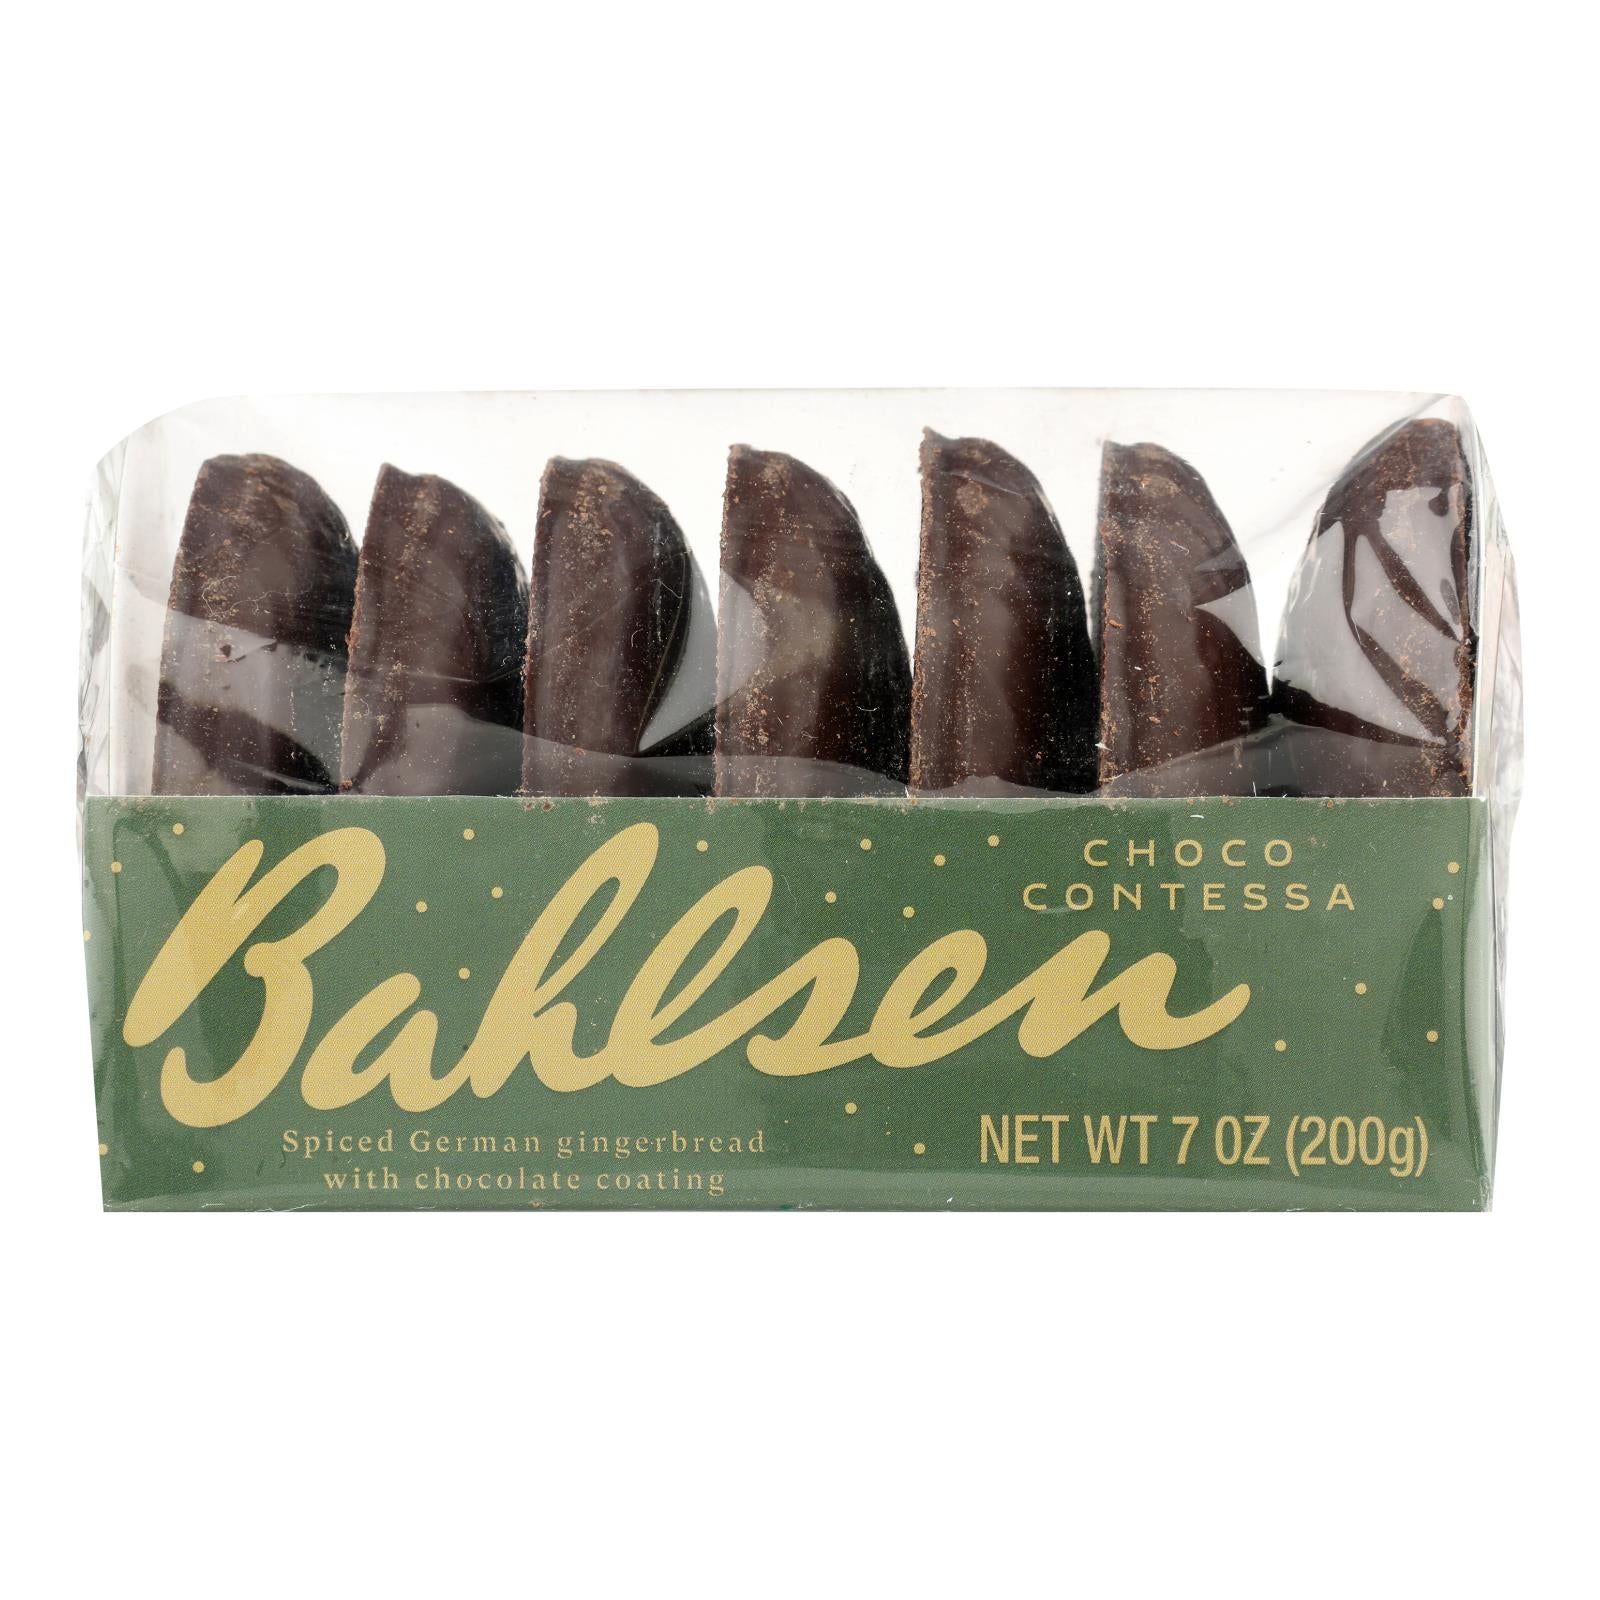 Bahlsen - Chocolate Contessa - Case of 18-7 OZ